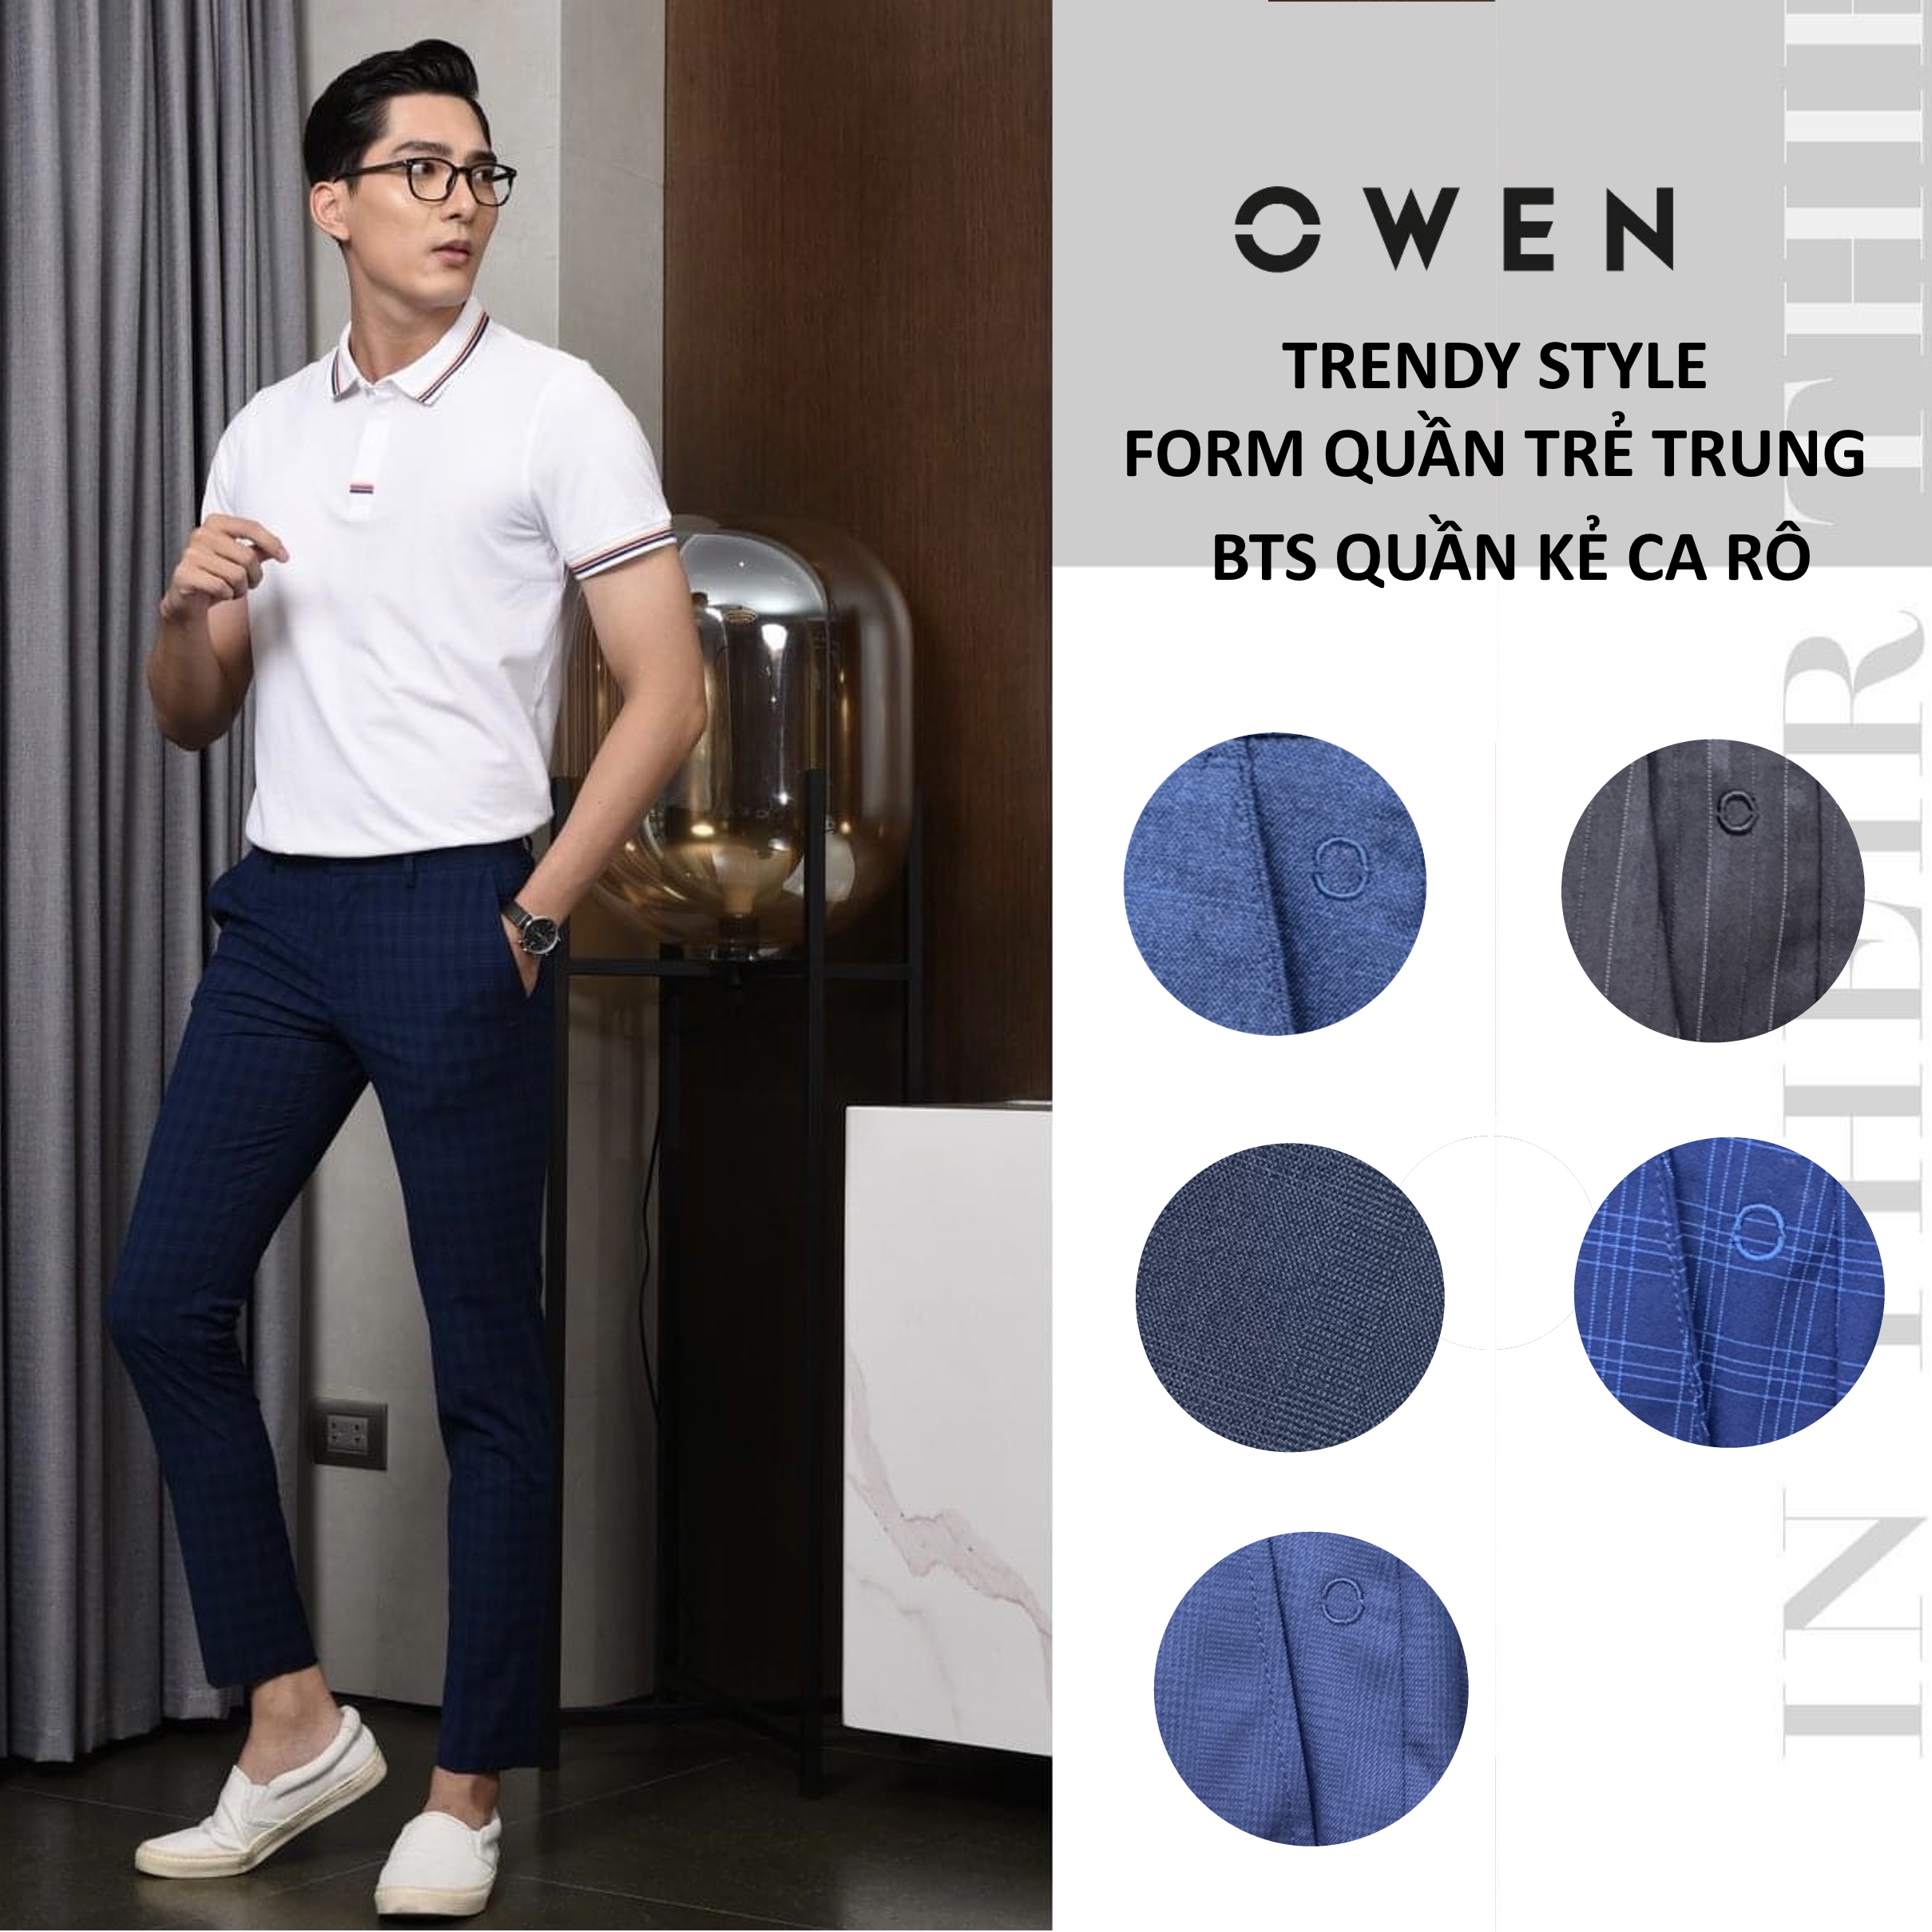 OWEN - Quần âu nam Owen dáng Trendy (dáng ôm) trẻ trung - Quần tây Owen